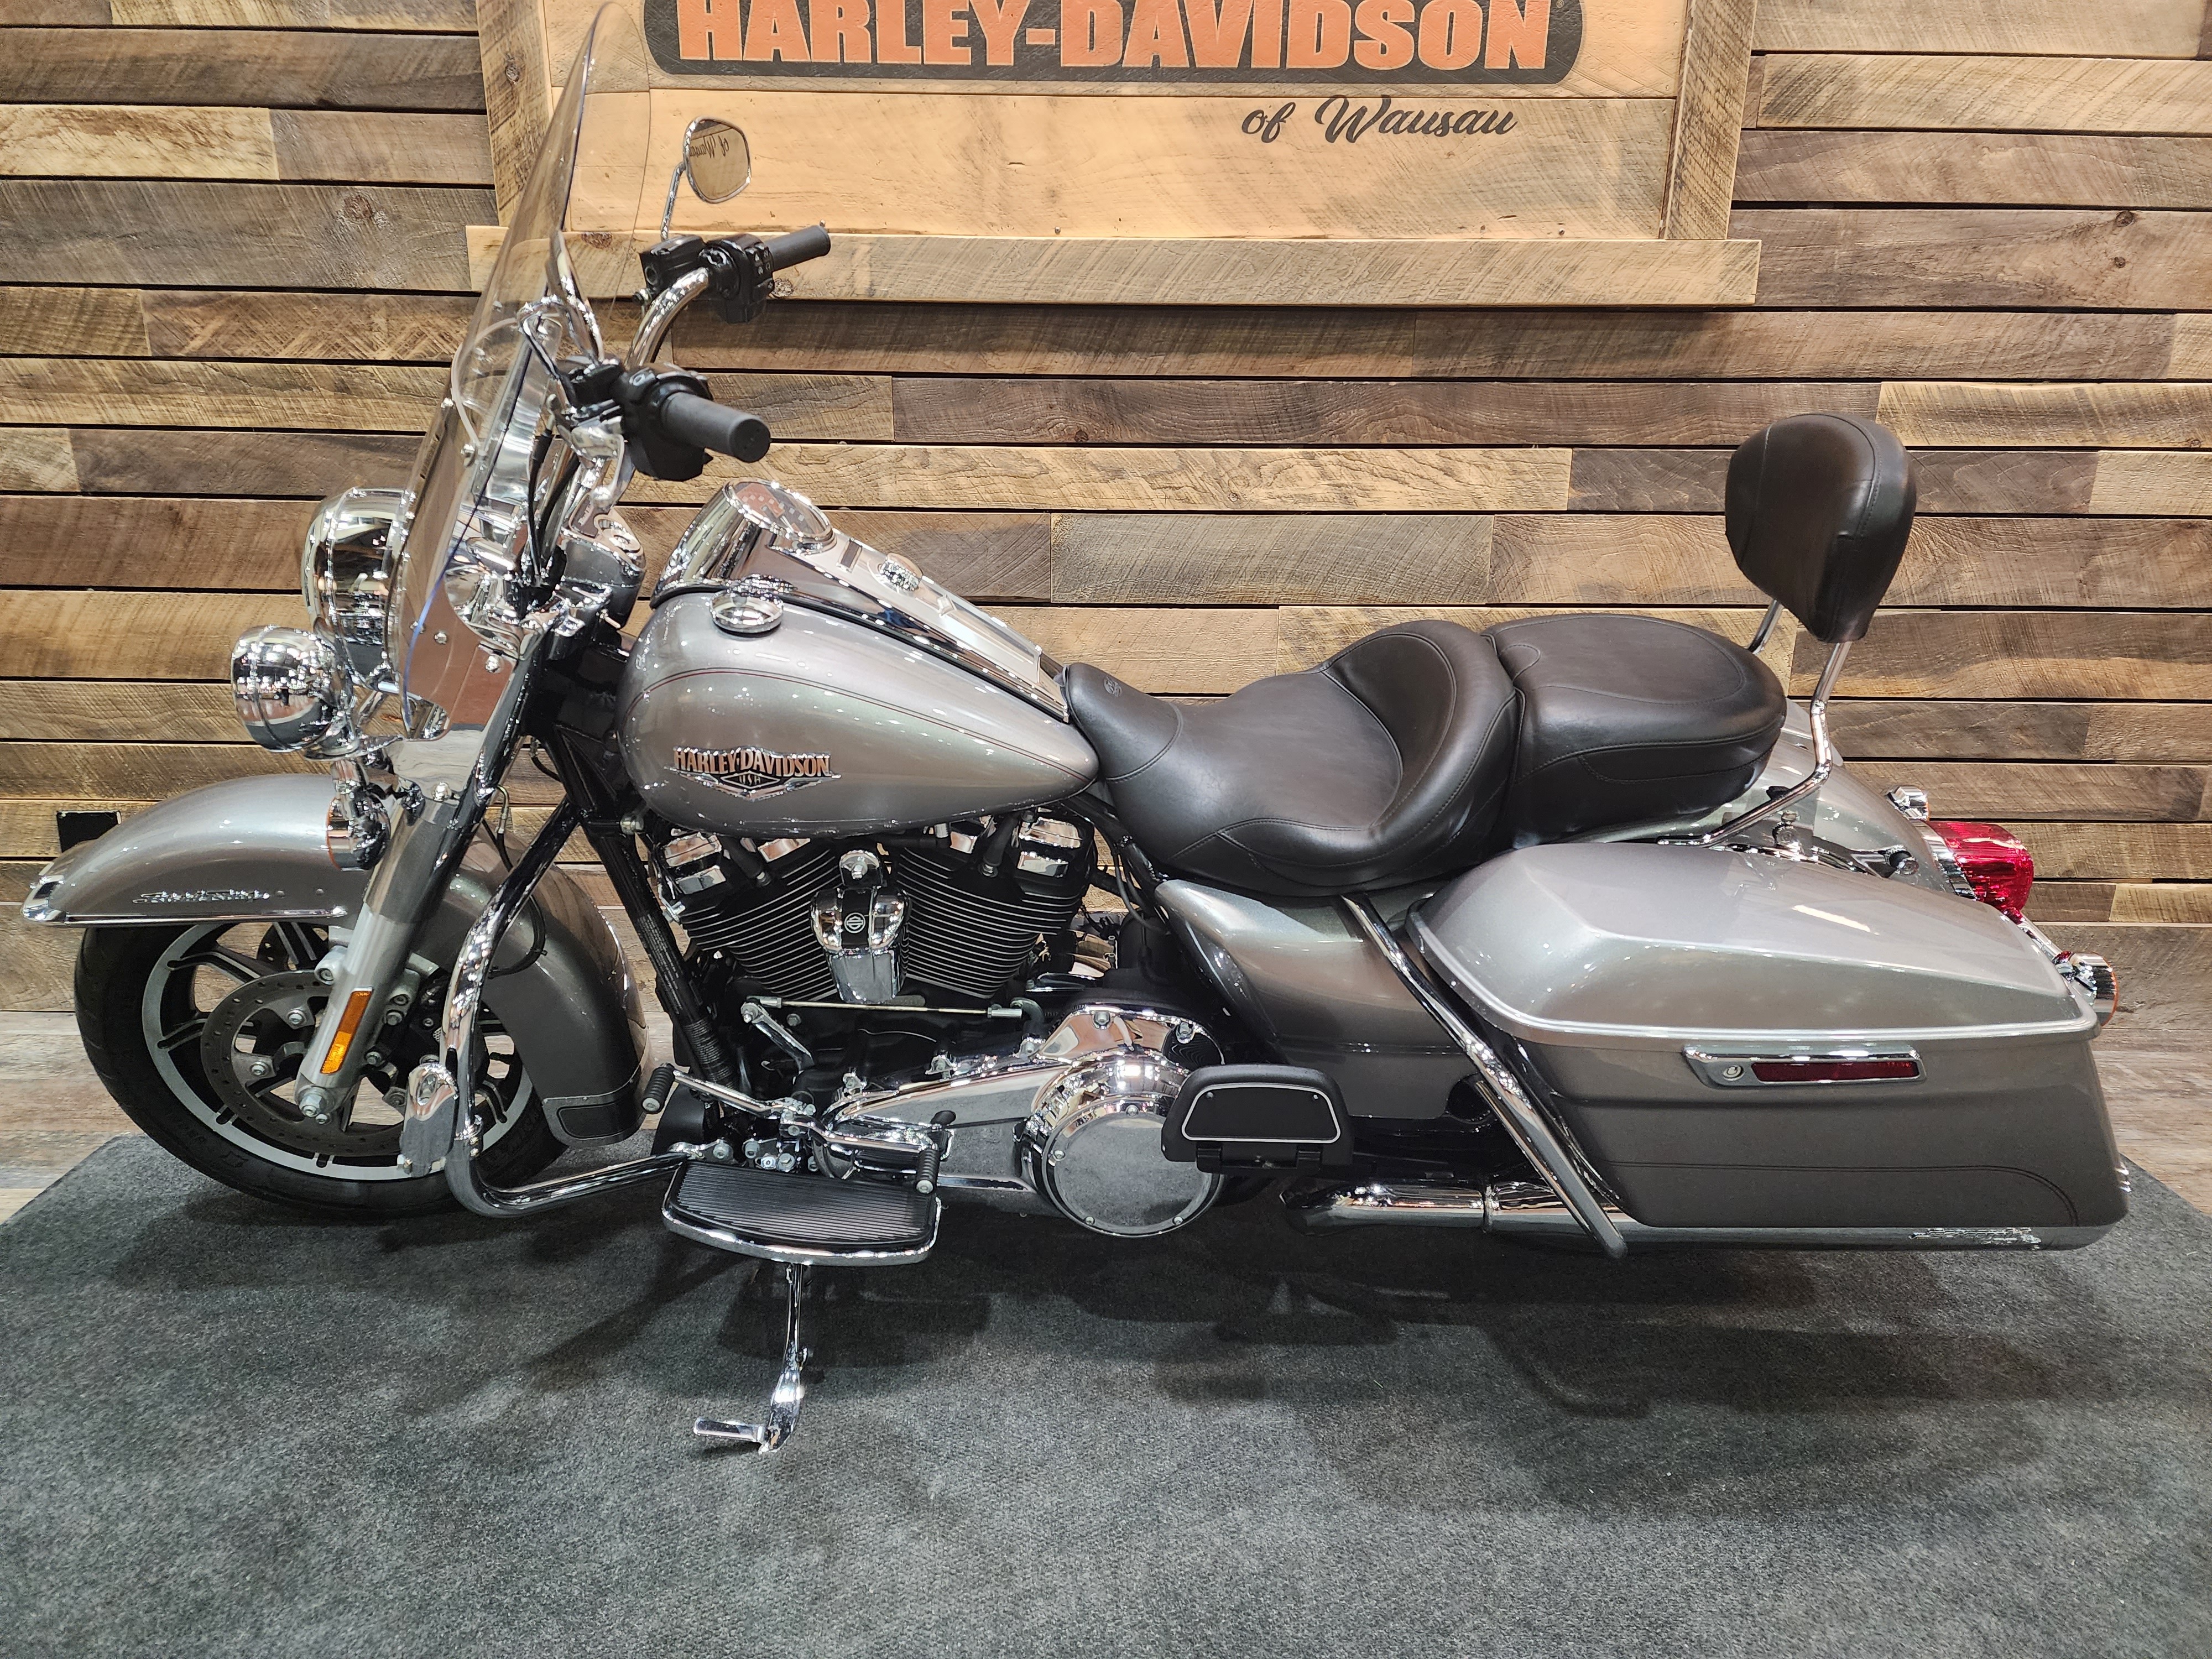 2017 Harley-Davidson Road King Base at Bull Falls Harley-Davidson